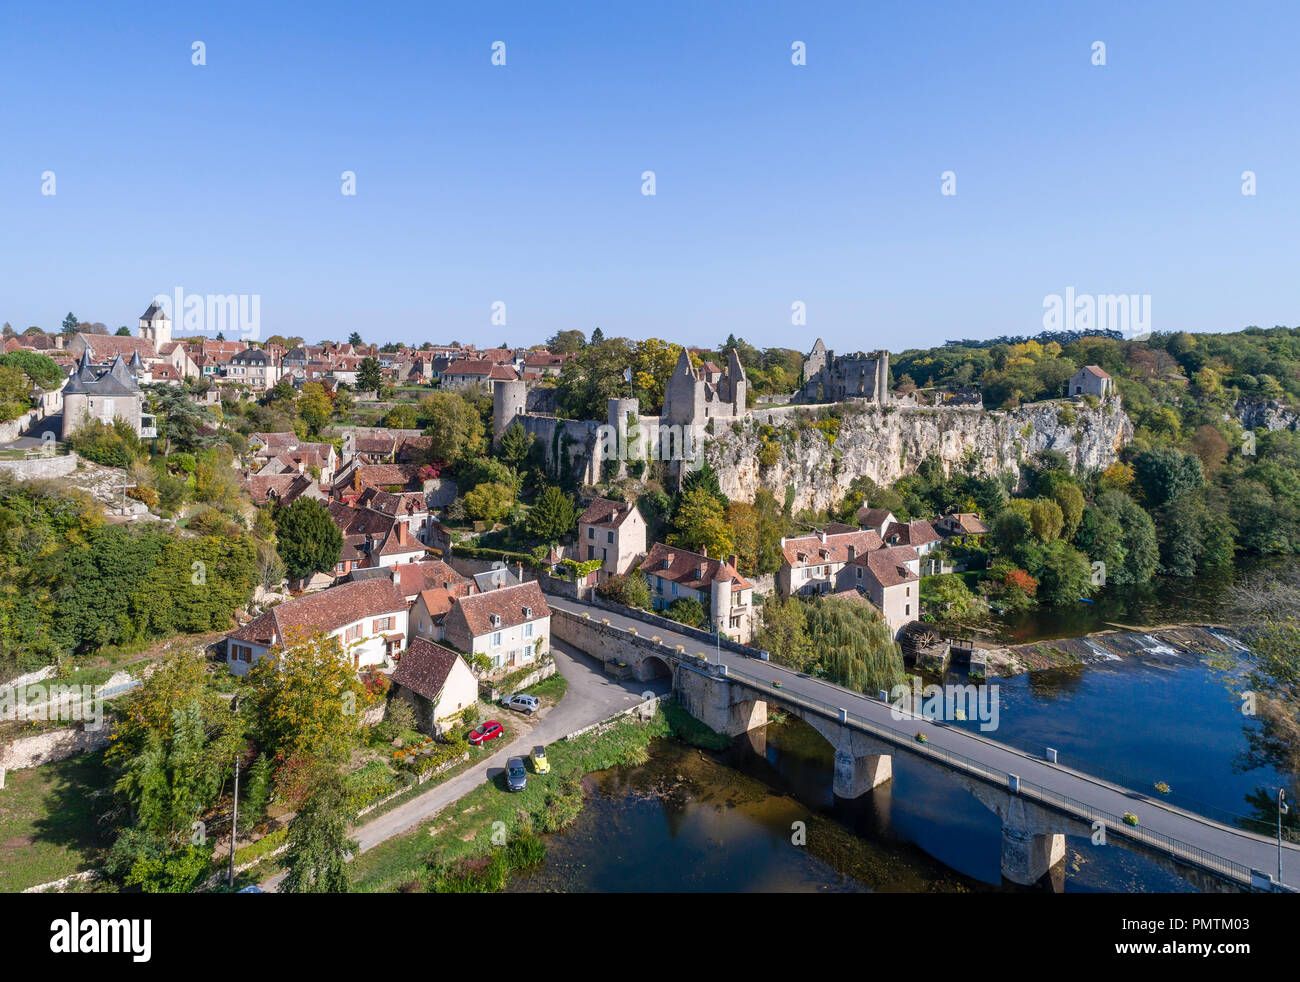 Francia, Vienne, angoli sur l'Anglin, etichettati Les Plus Beaux Villages de France (i più bei villaggi di Francia), le rovine del castello overlooki Foto Stock